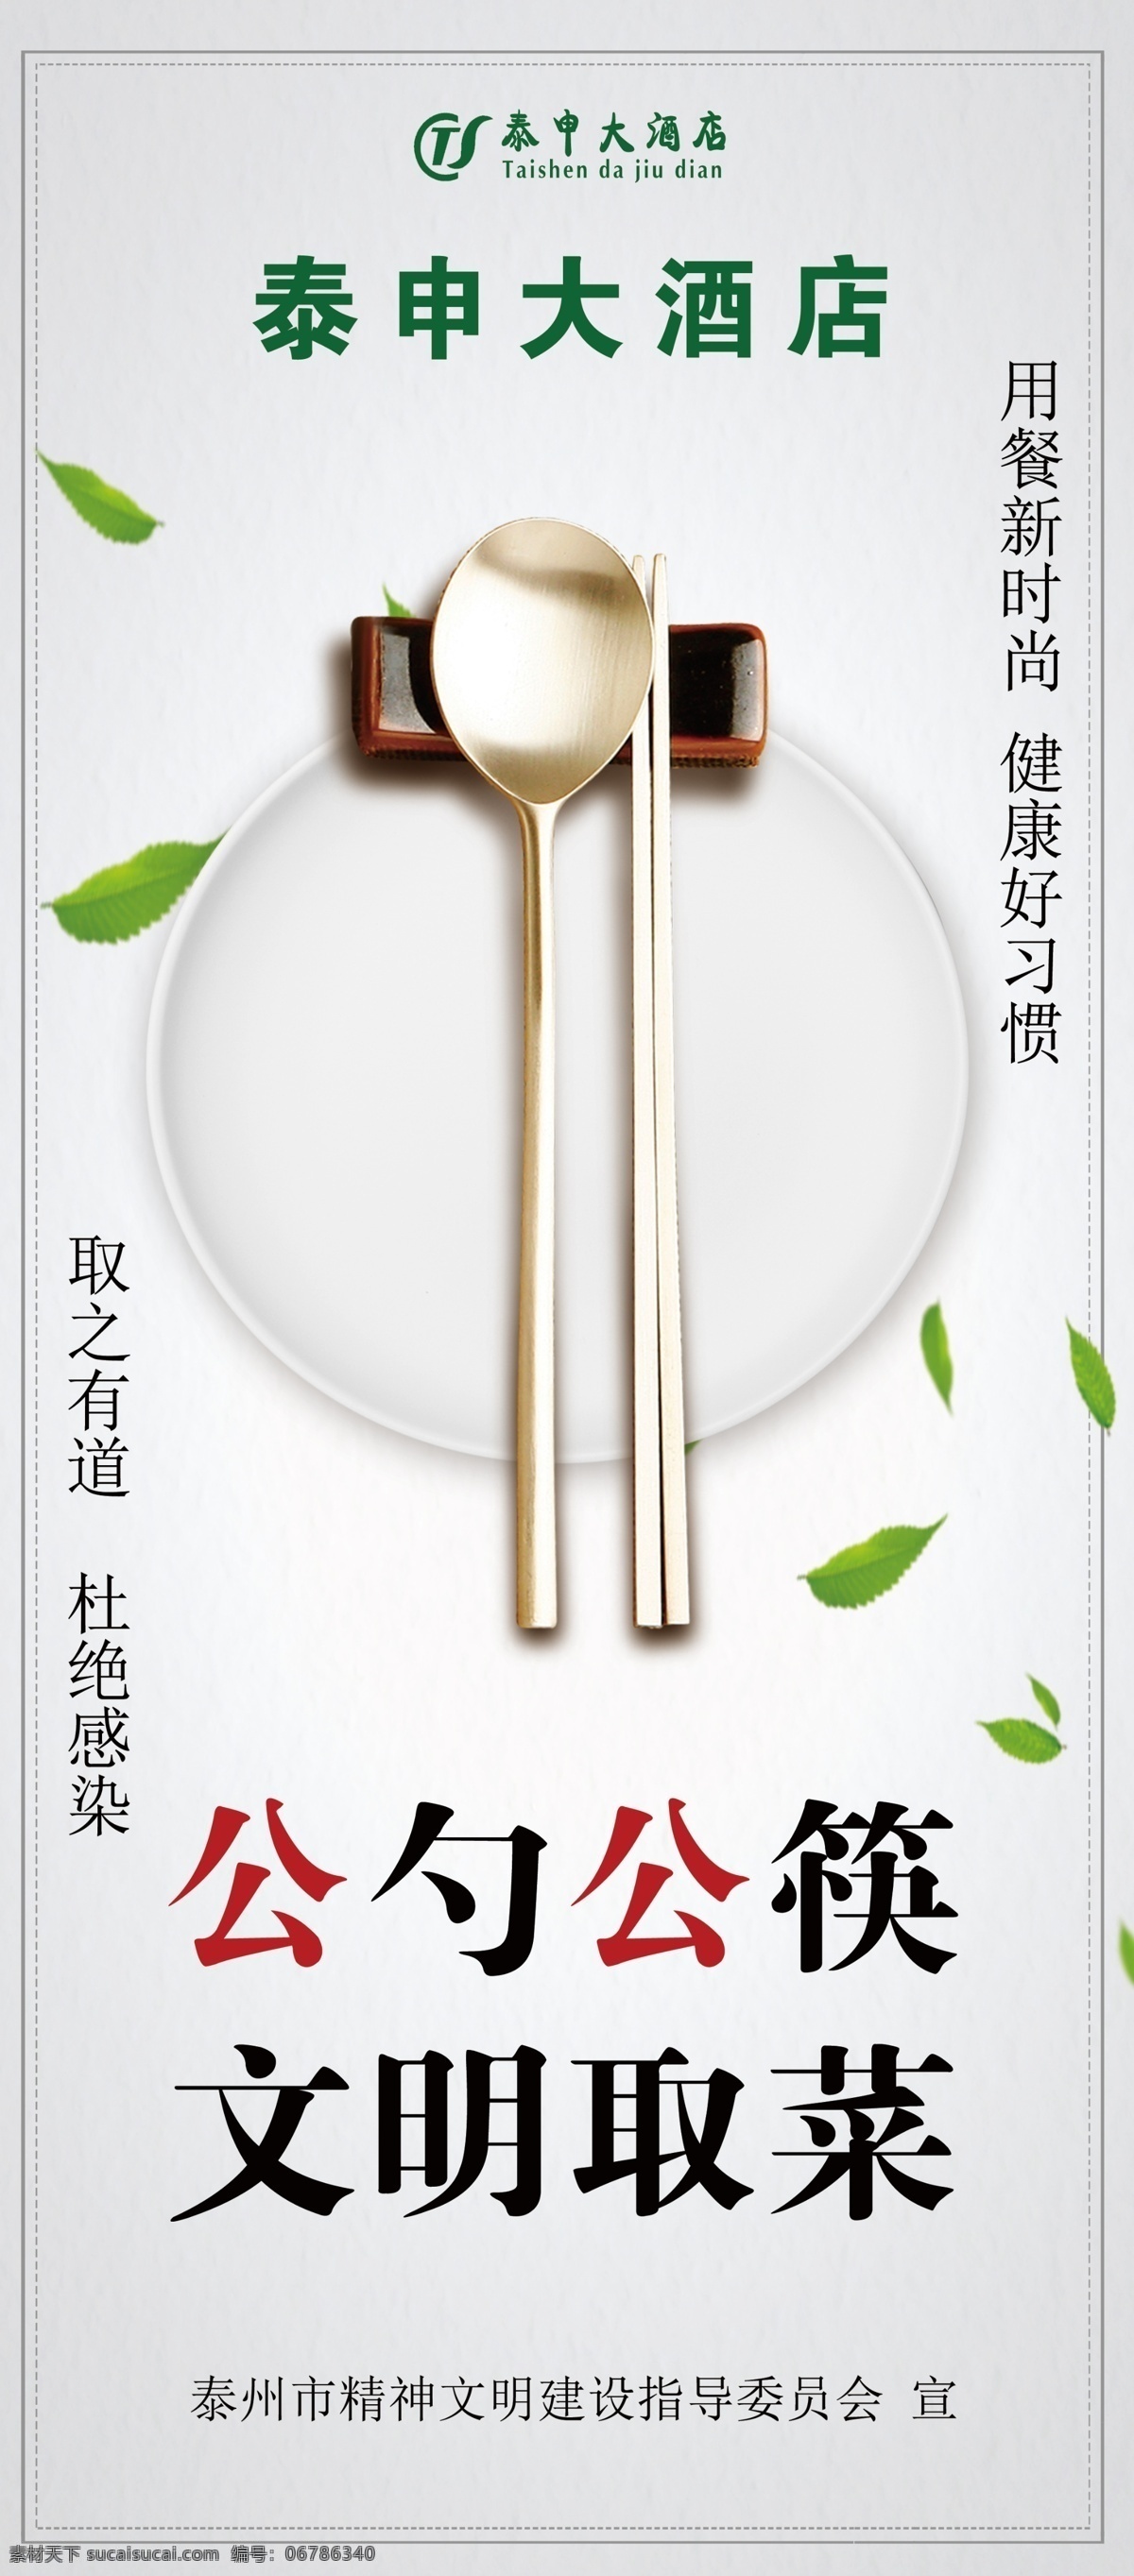 文明公筷公勺 文明用餐 健康饮食 健康食品 绿色食品 食品安全 食品卫生 公筷公 用餐新时尚 分层